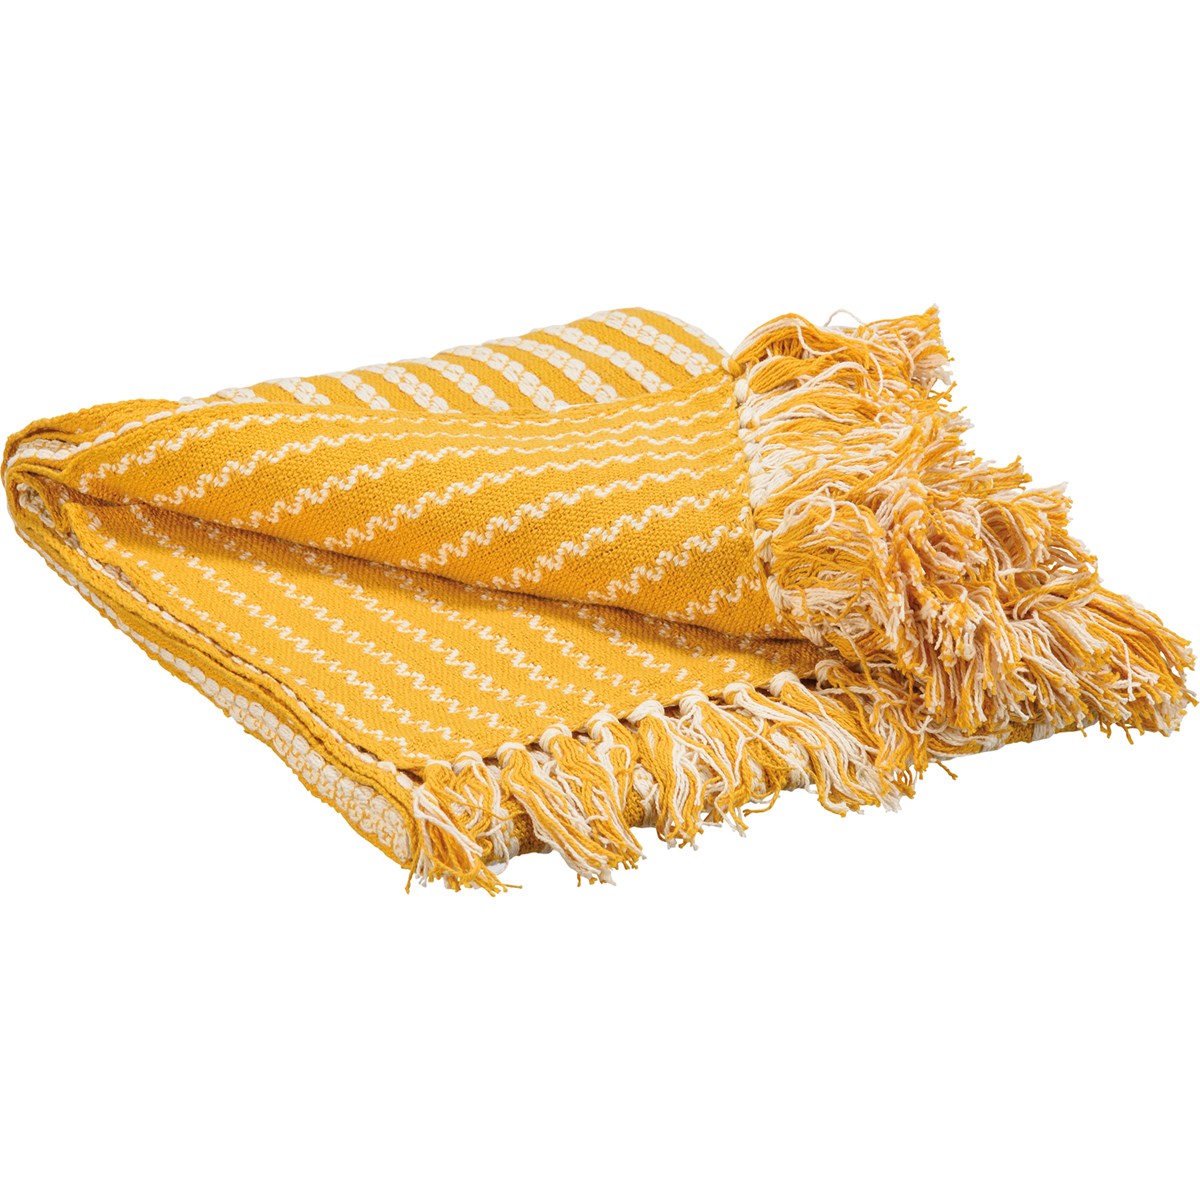 Throw - Yellow Stripes - 50" x 60" - Cotton